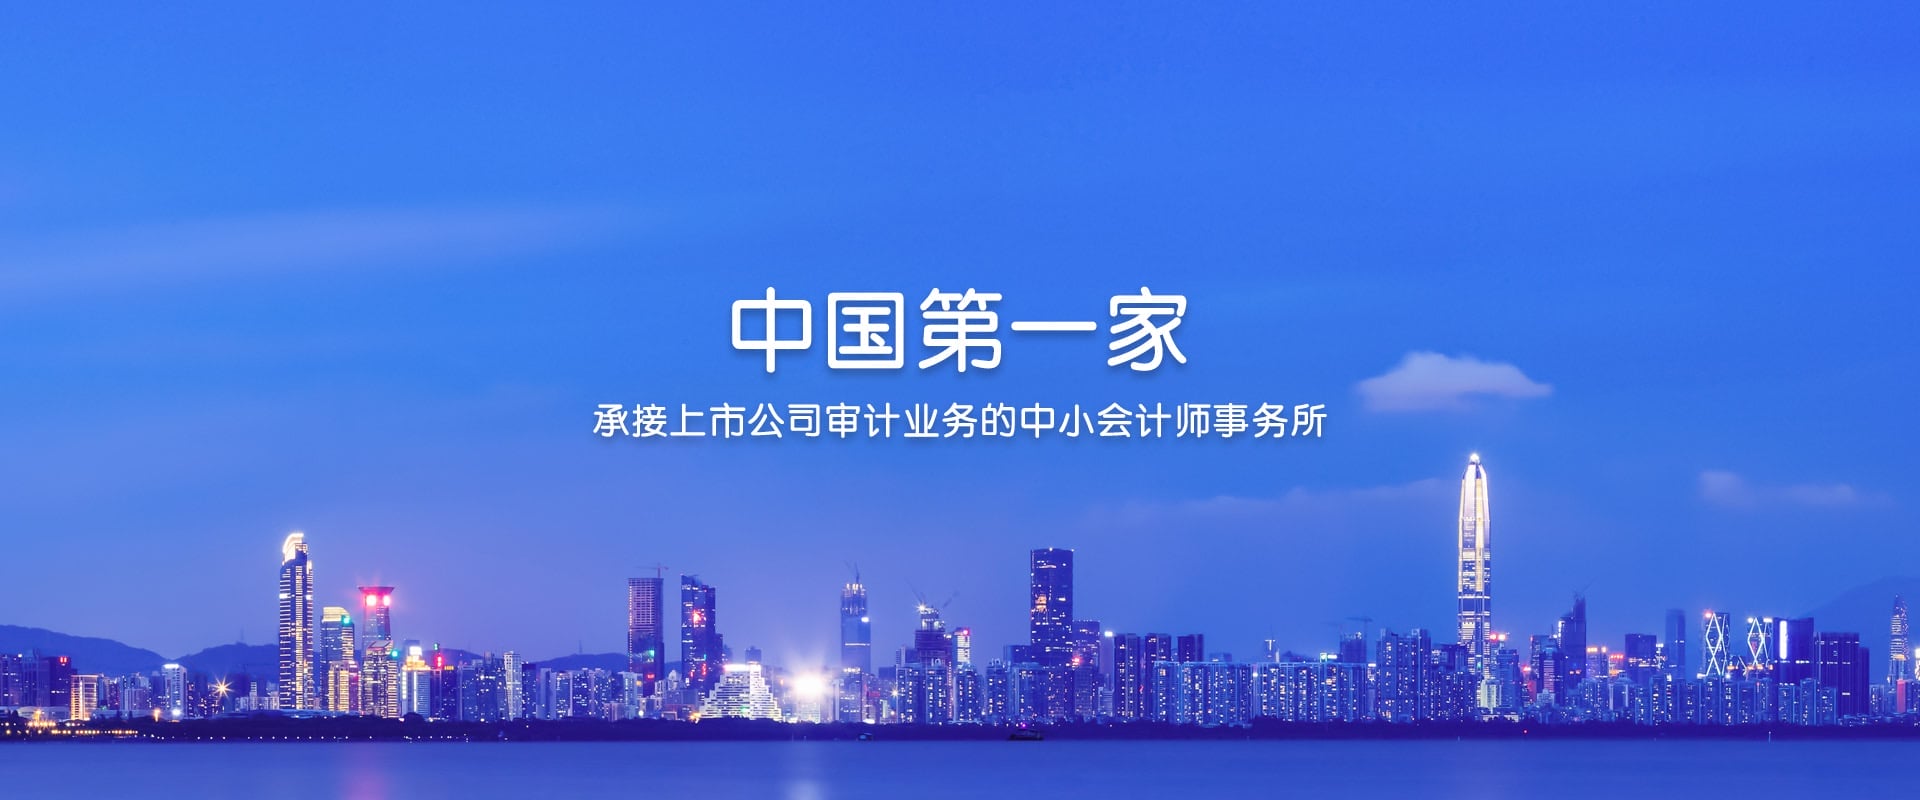 深圳堂堂会计师事务所承接新三板超能国际年报审计业务